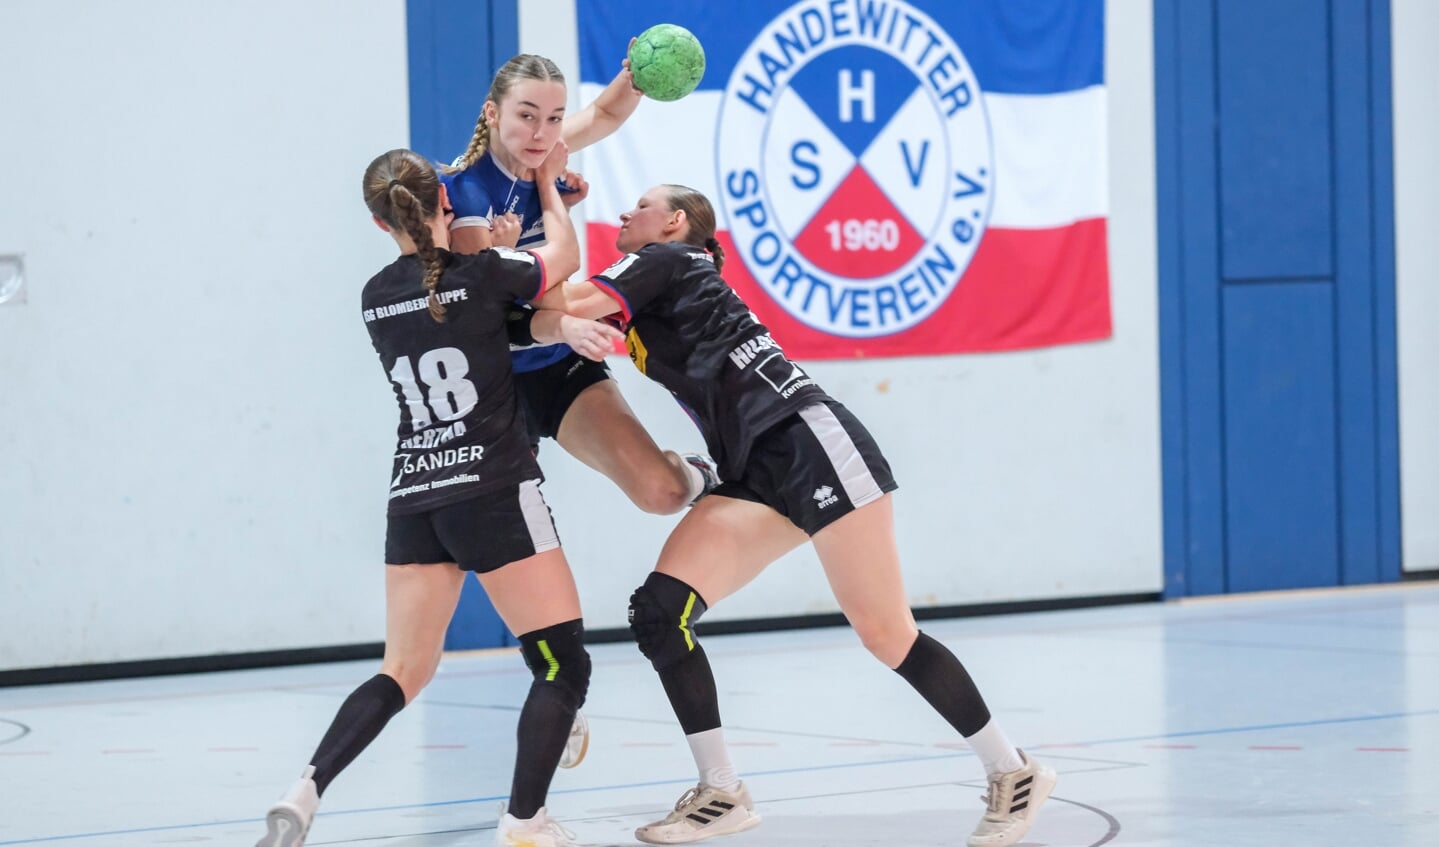 Pigerne fra Handewitter SV er kommet i klemme, og de yngste får en travl weekend. U19-holdet vandt dog den første kvartfinale-kamp hjemme over mægtige HSG Blomberg-Lippe.